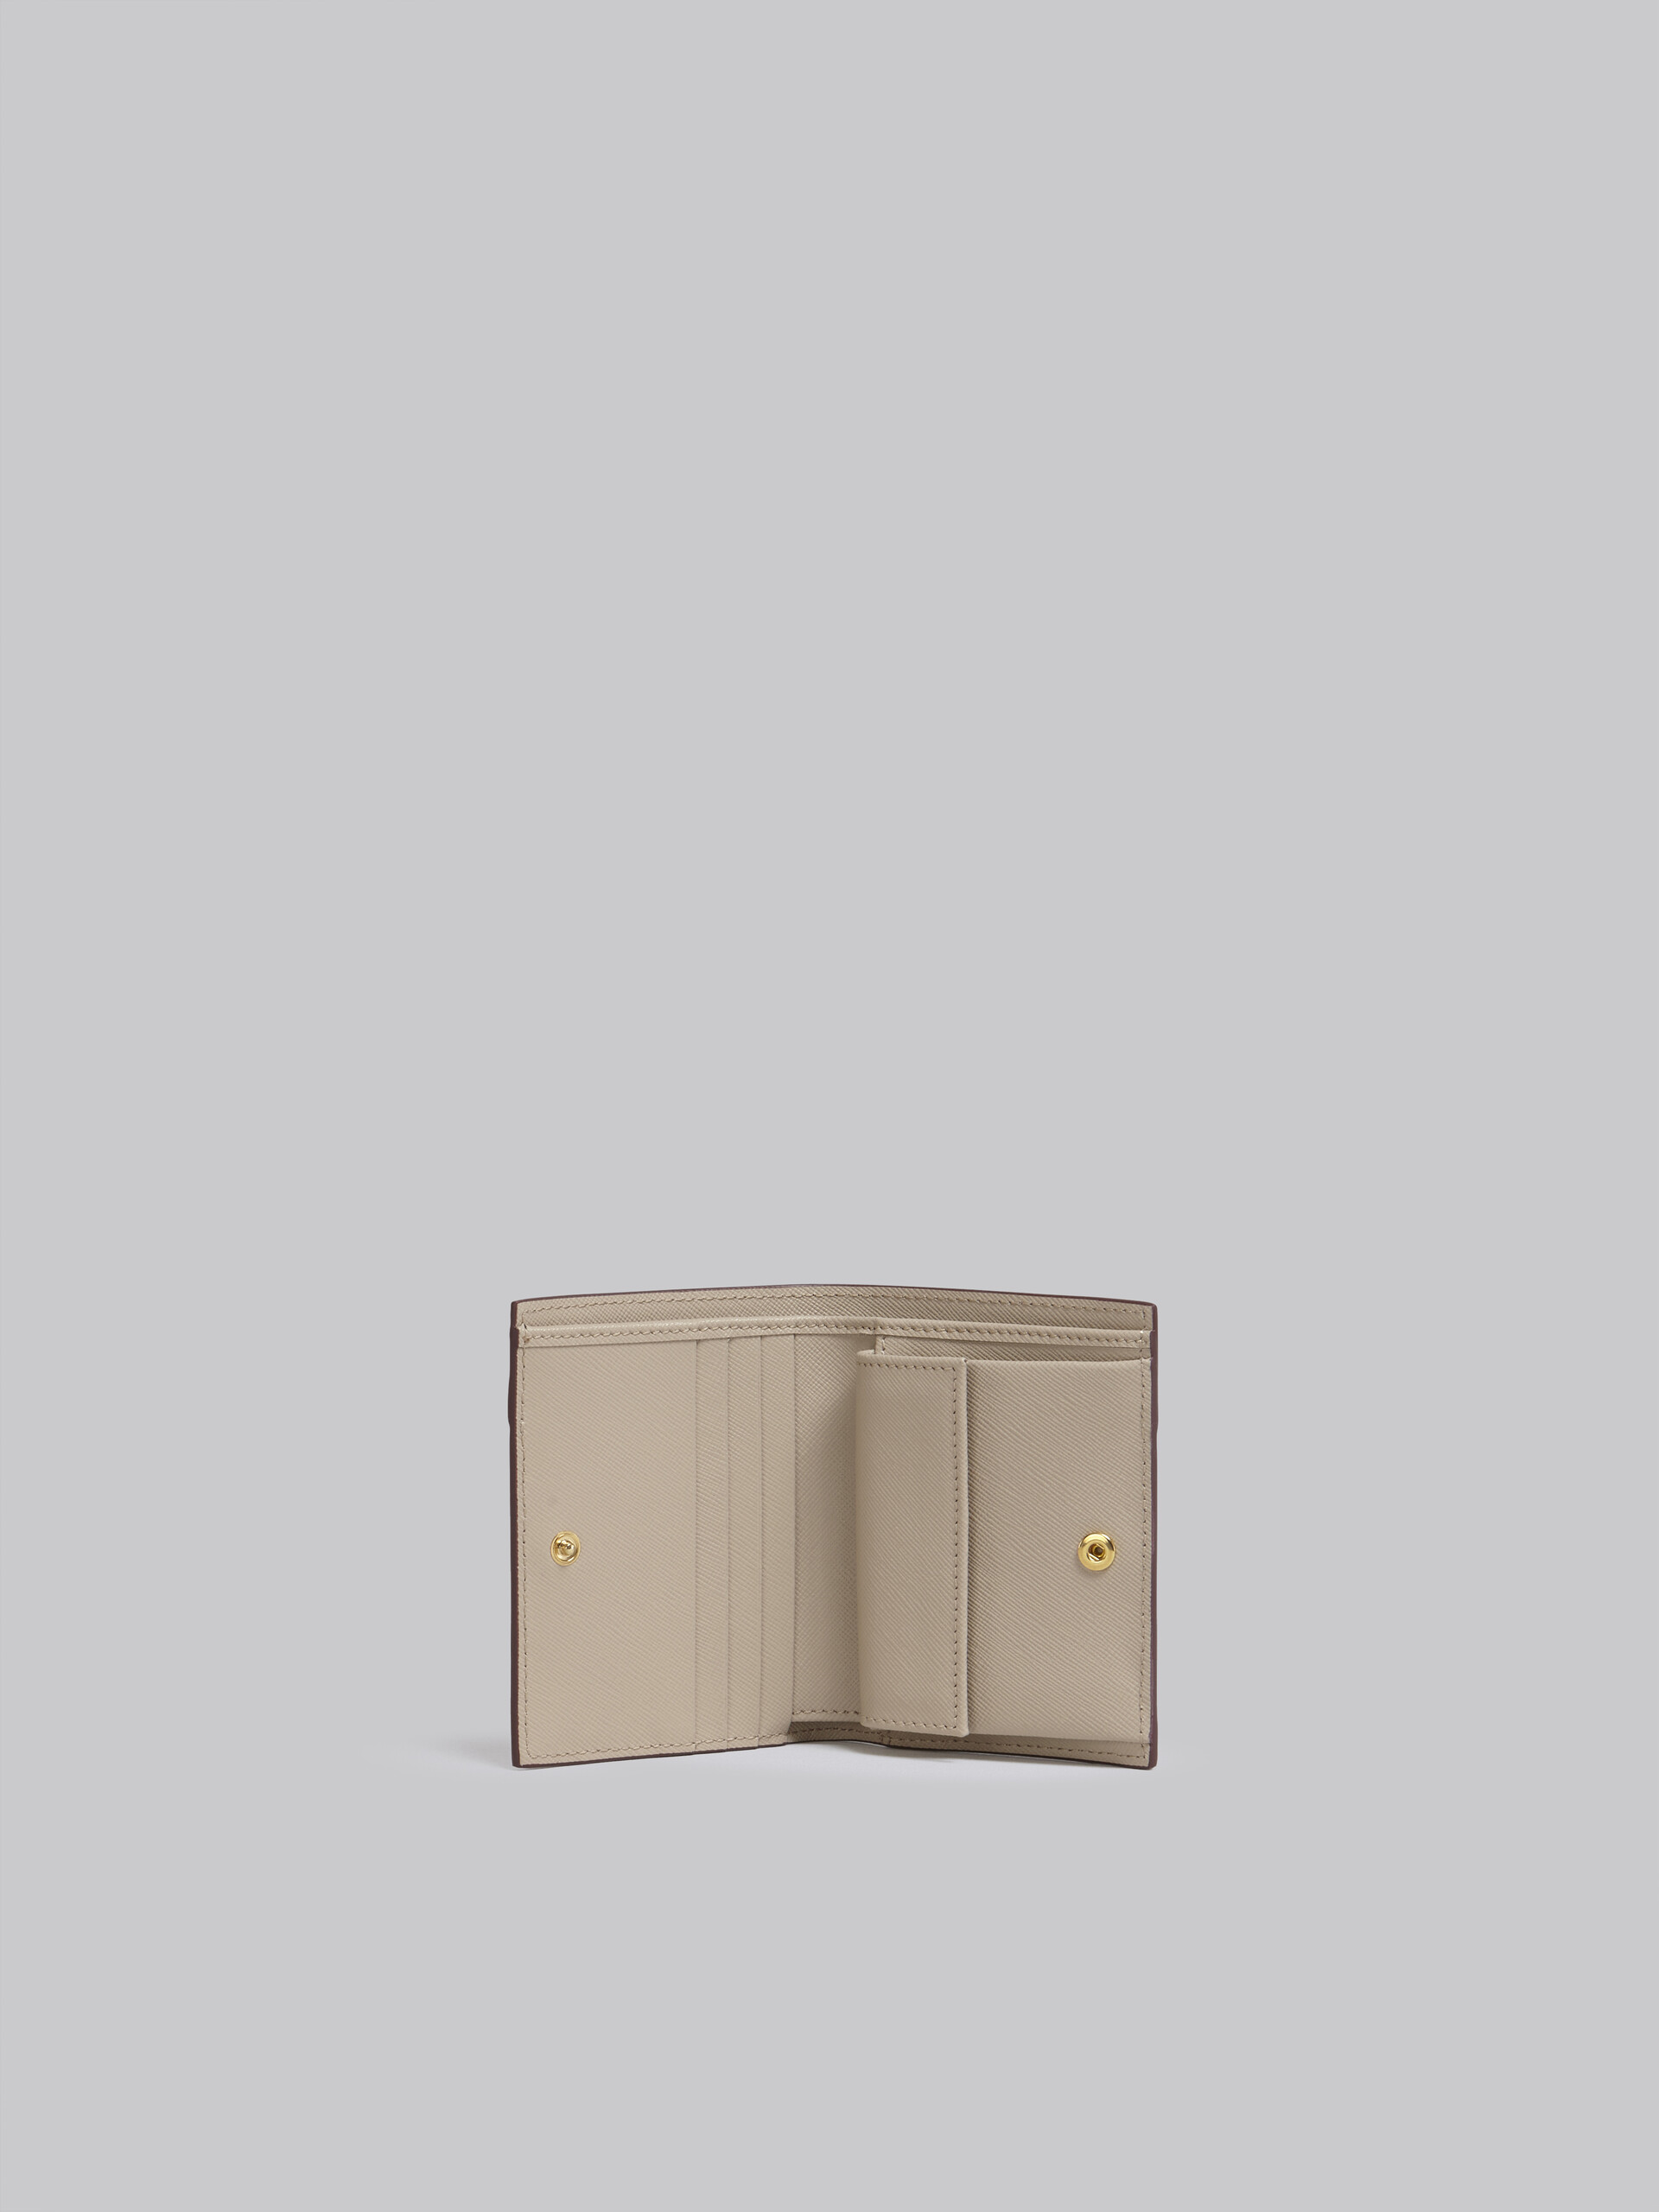 Beige saffiano leather bi-fold wallet